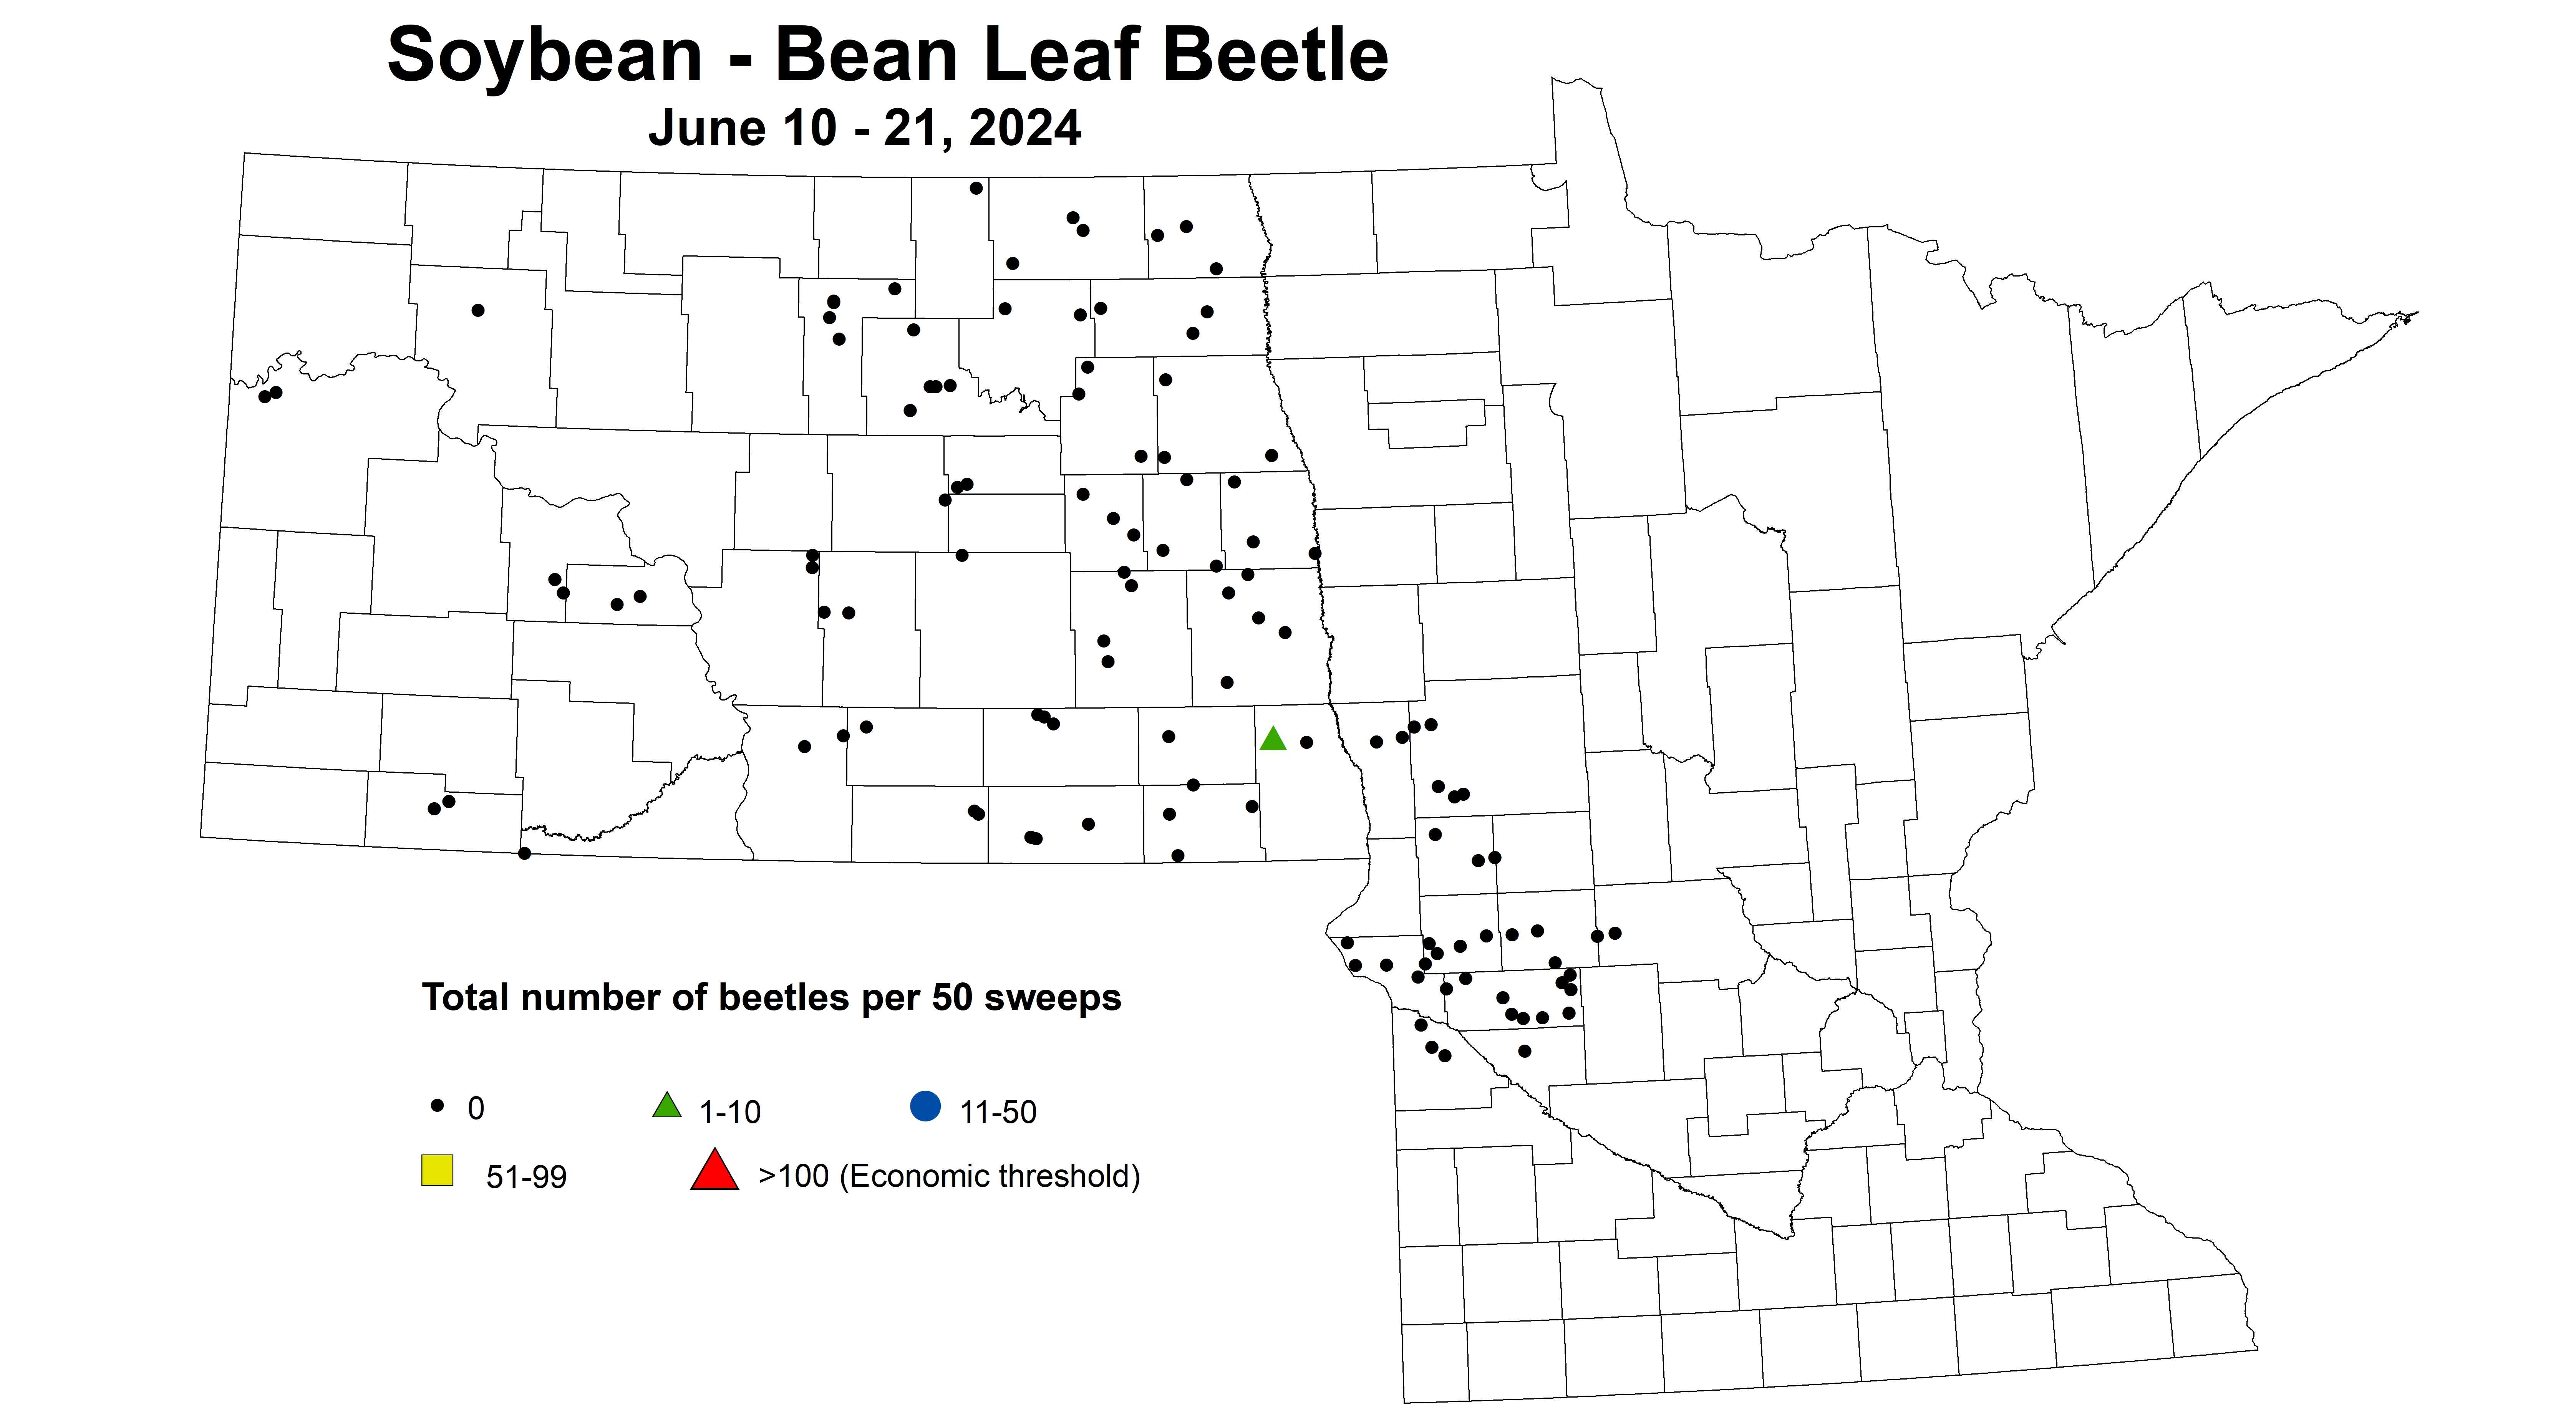 soybean BLB beetles per 50 sweeps June 10-21 2024